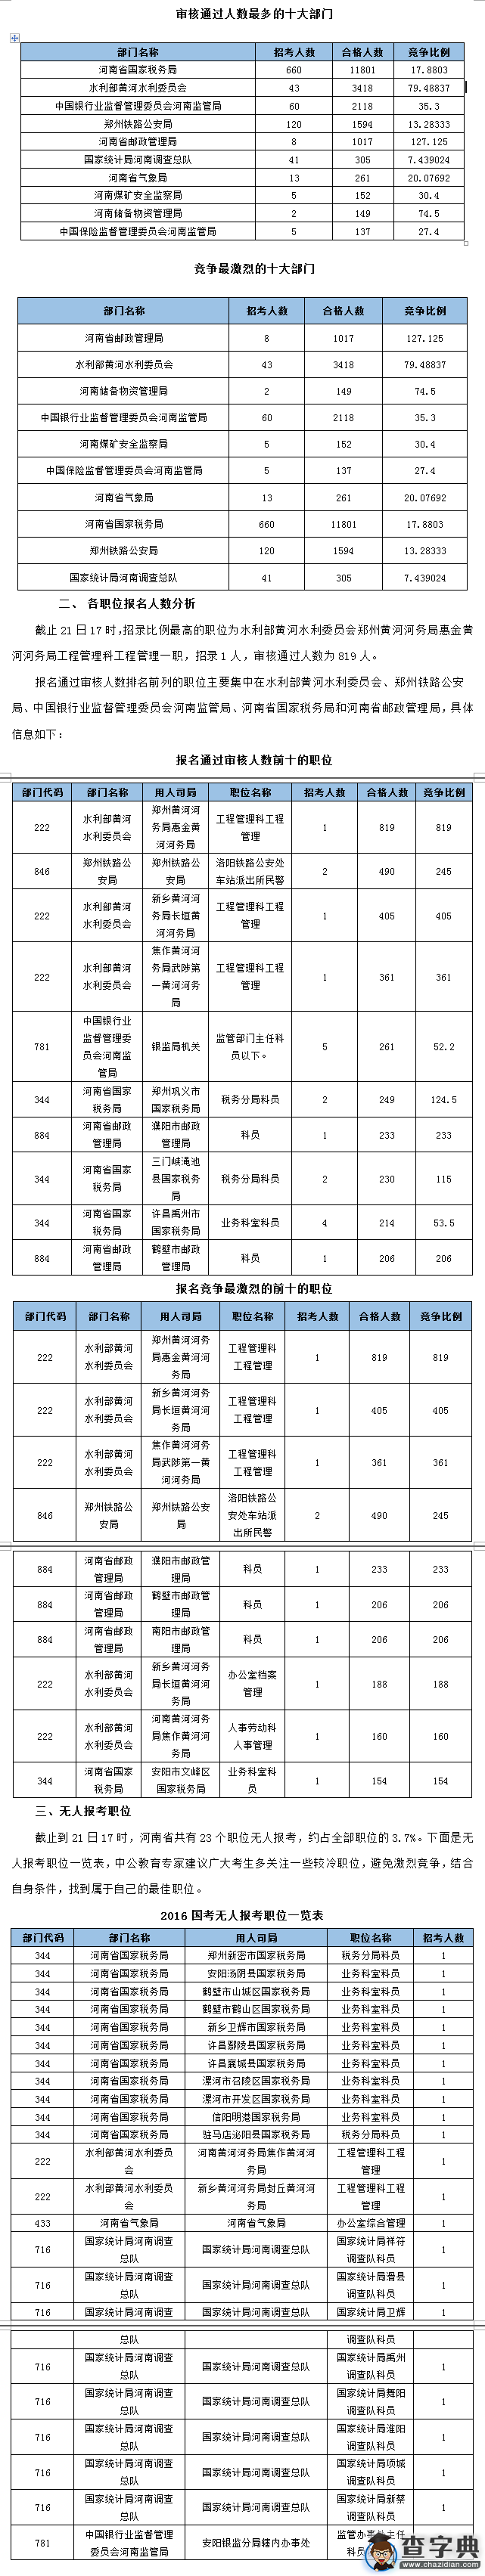 2016国考河南省报考通过审核人数20995人 最热职位819:11